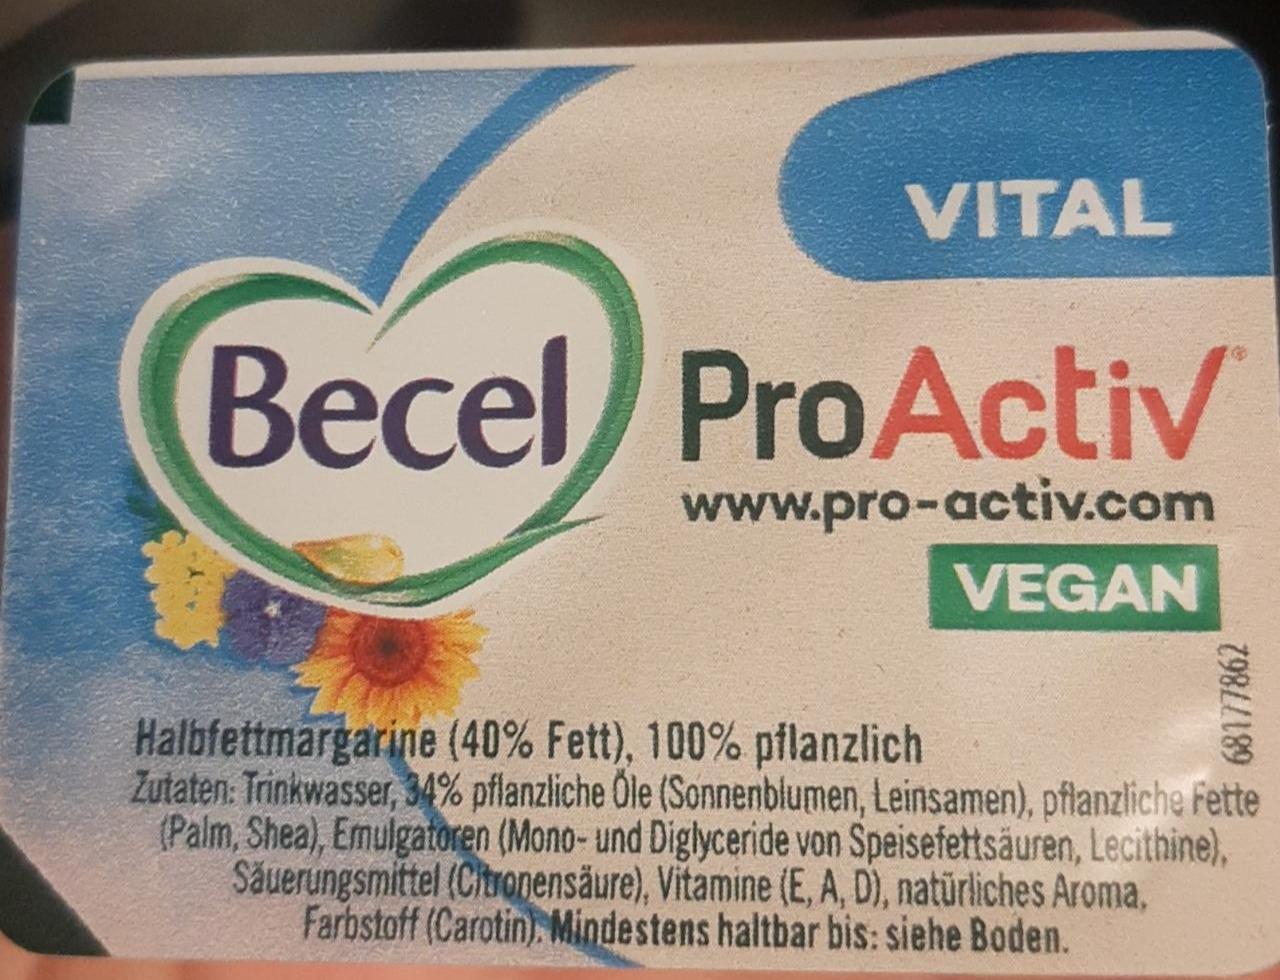 Fotografie - ProActiv Vital Vegan 40% Fett Margarine Becel